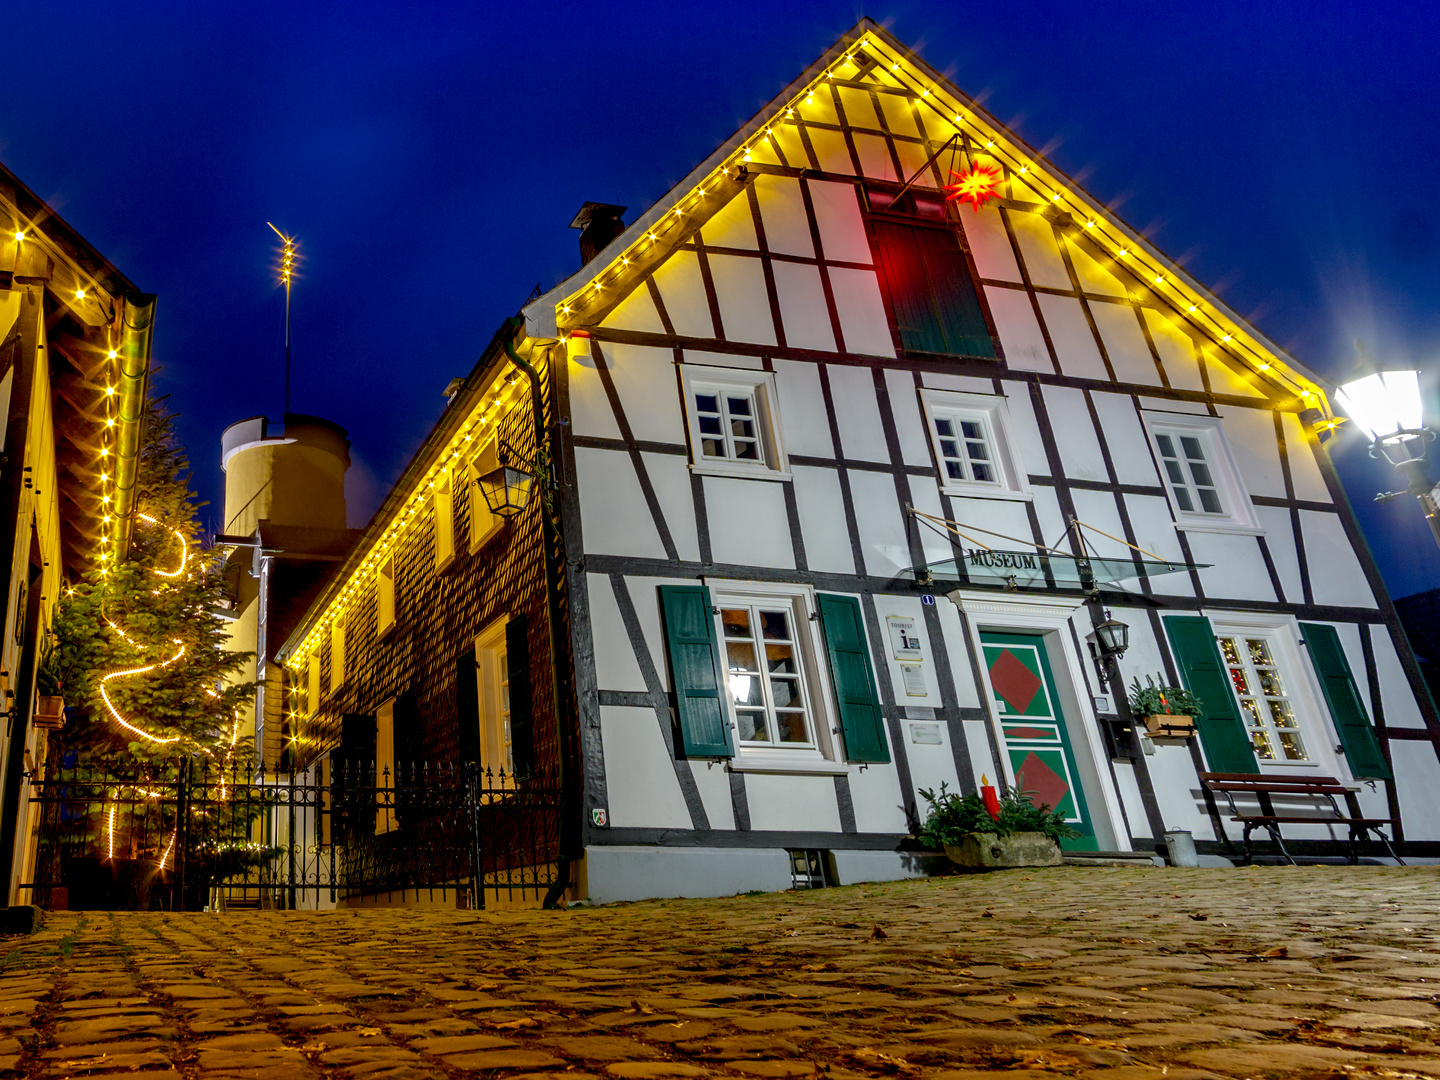 Weihnachtliches Heimatmuseum in der Altstadt von Bergneustadt